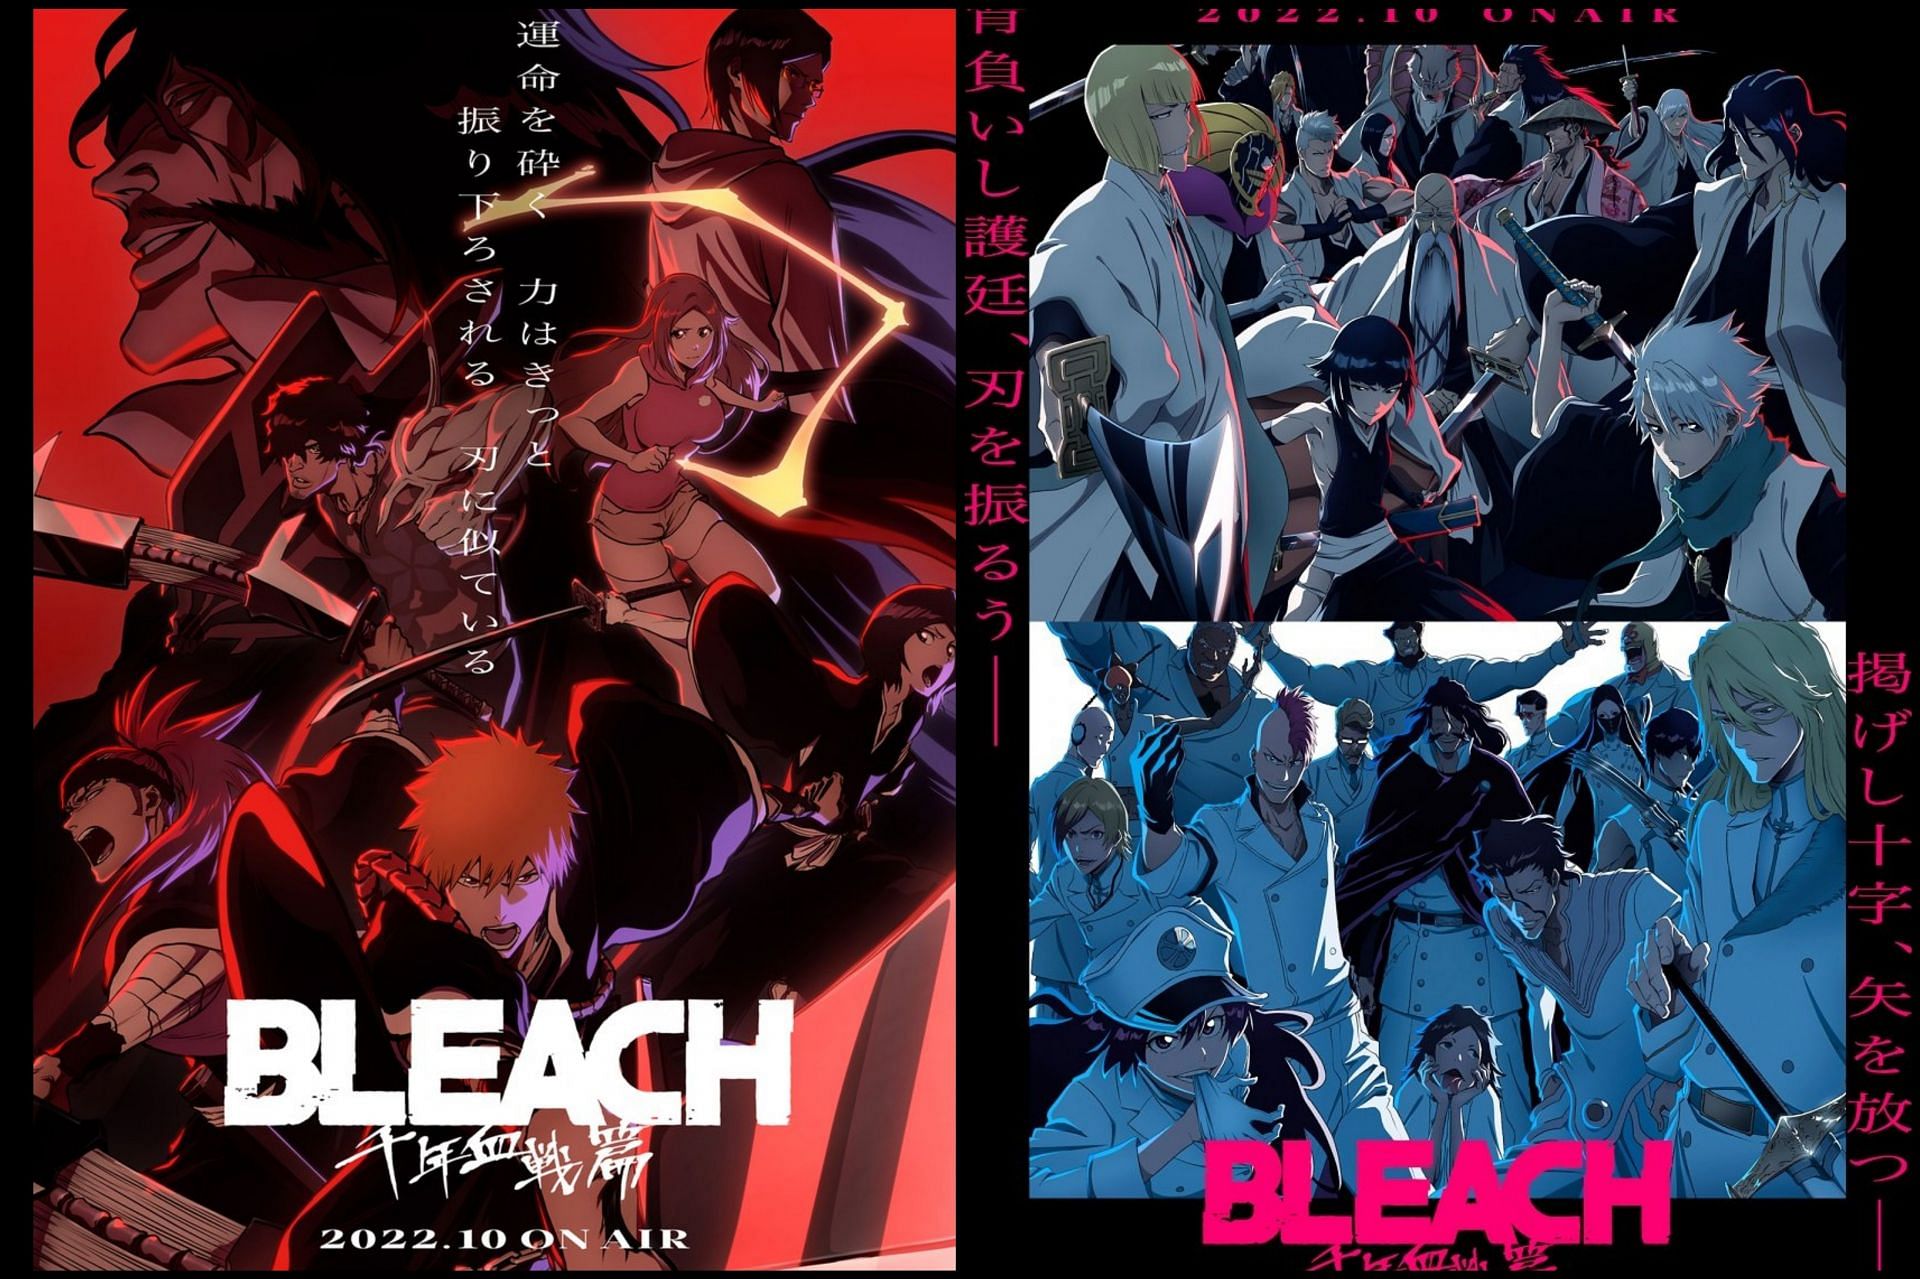 Bleach - NEW KEY VISUAL! ⚔️ #BLEACH: Thousand-Year Blood War